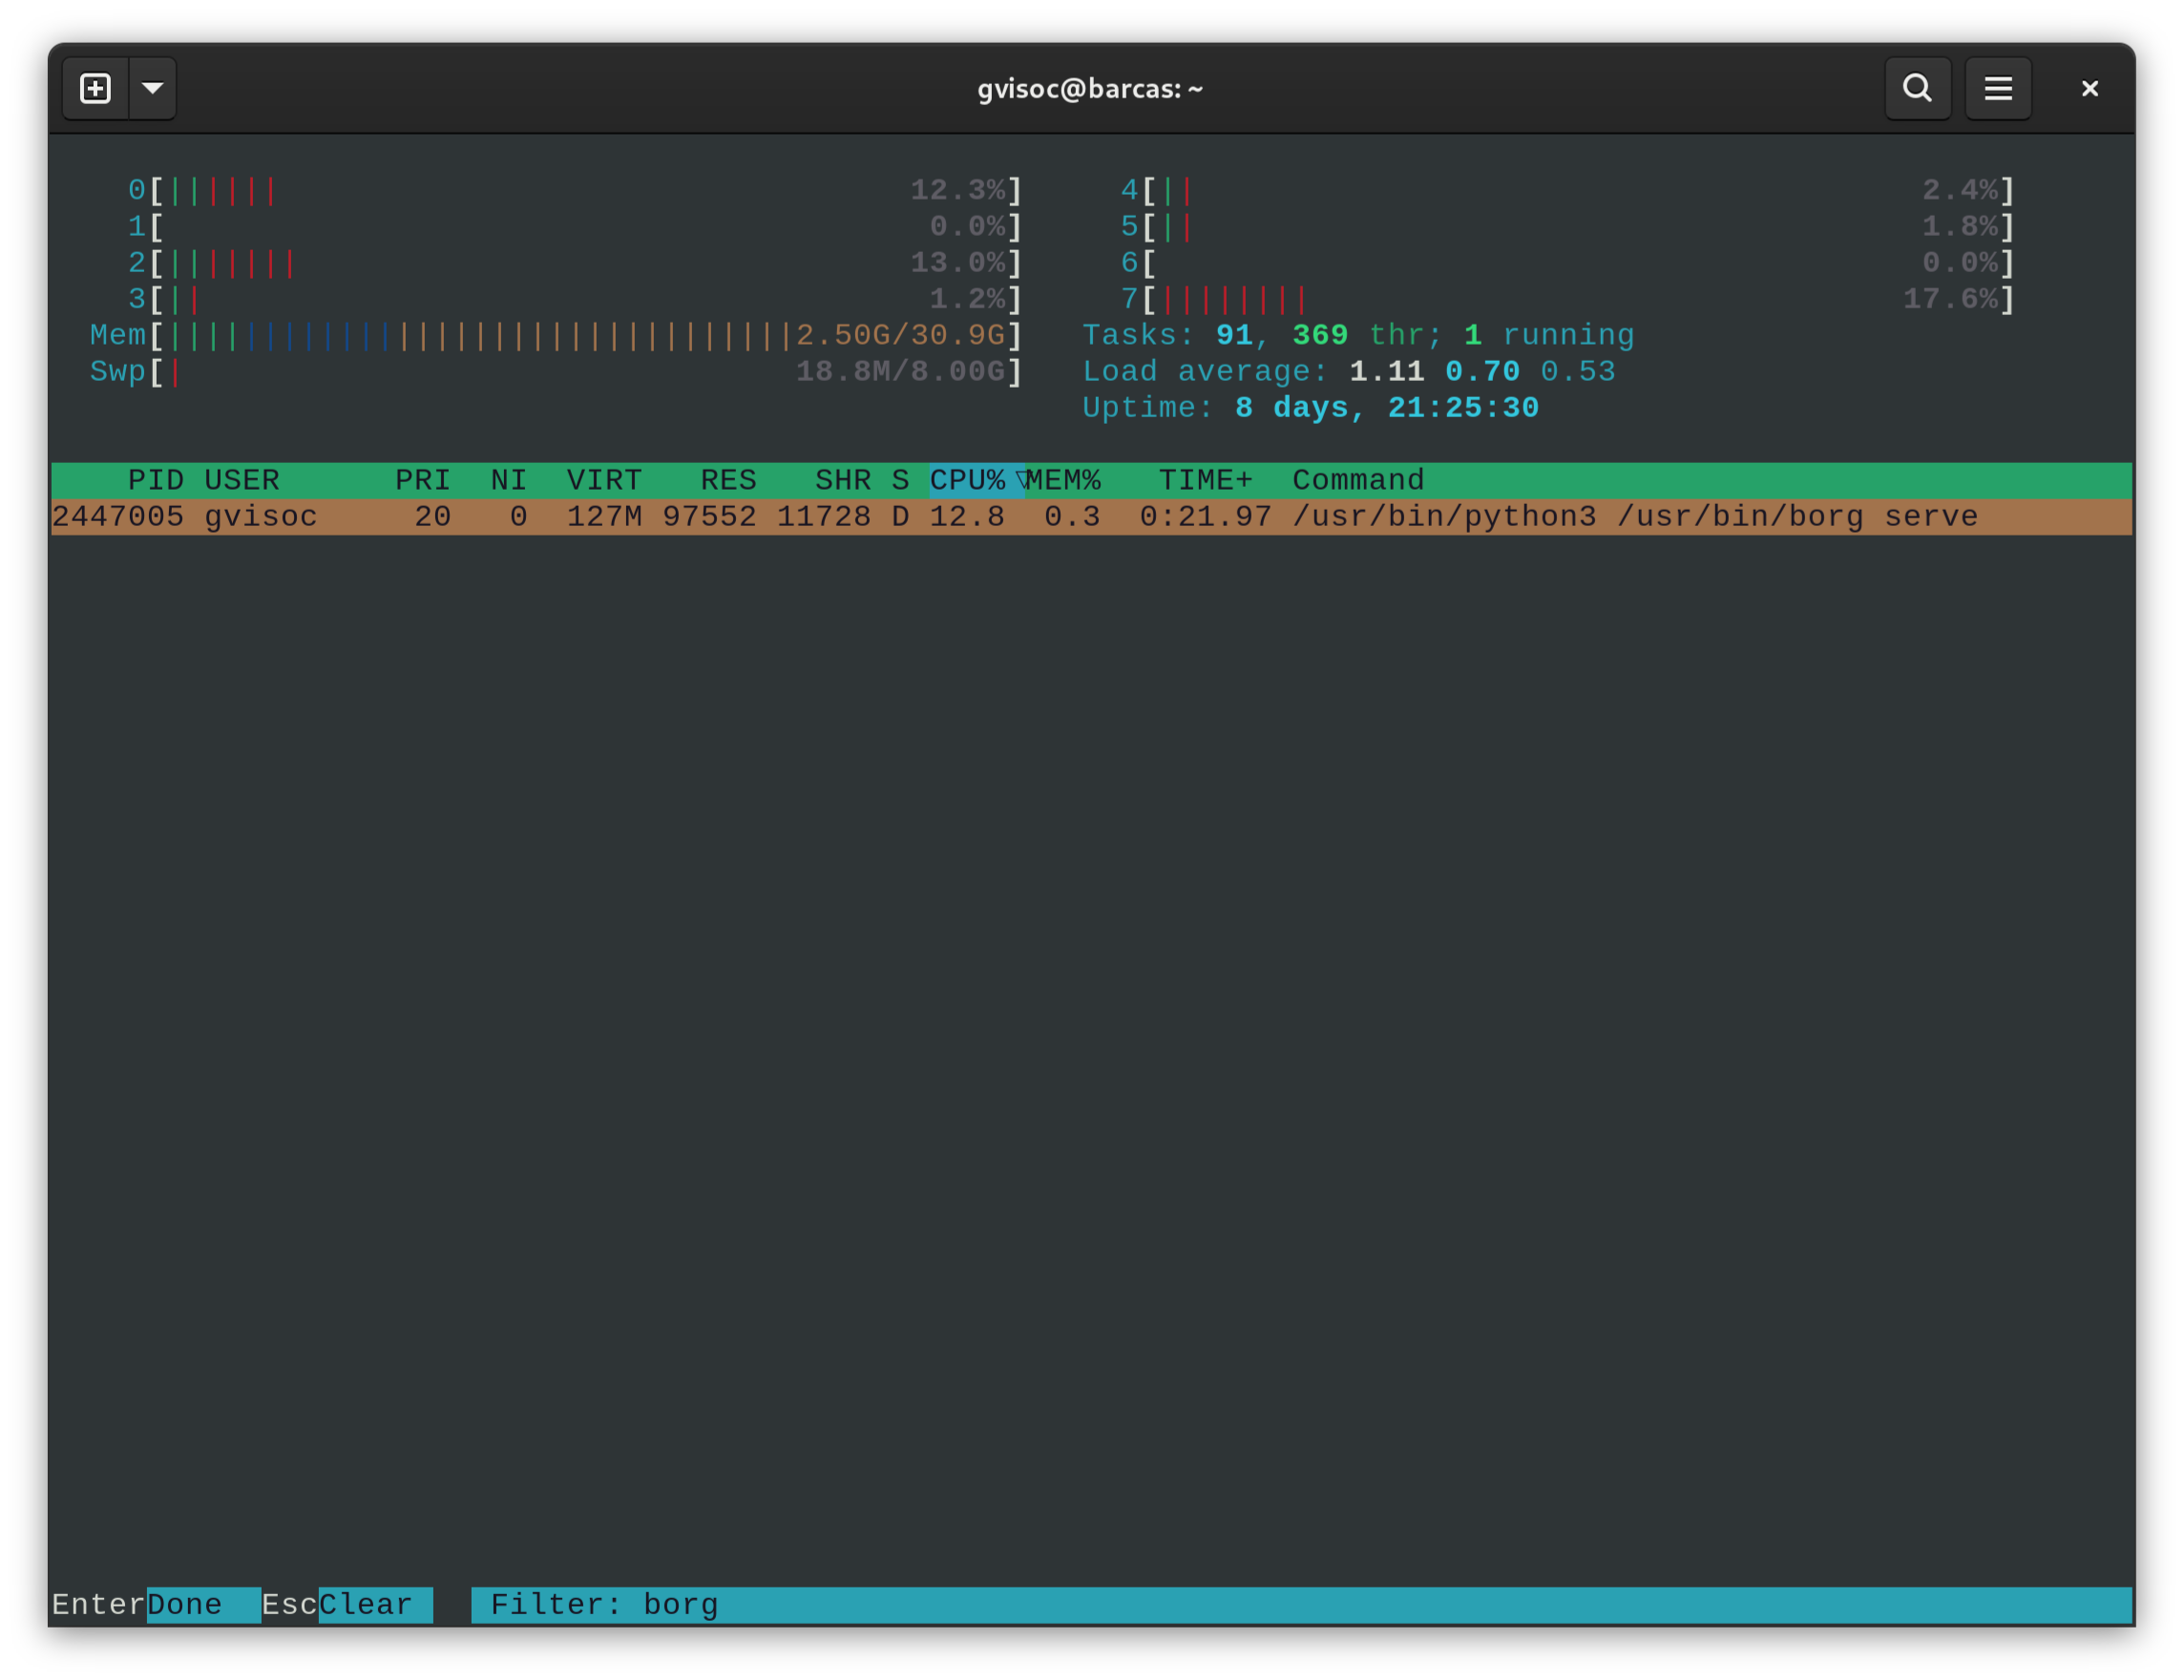 La imagen muestra un terminal de Gnome conectado al host barcas, bajo el usuario gvisoc. Dentro del terminal se puede ver la salida del comando htop, que muestra el proceso de servidor de borg realizando la verificación de integridad de la copia de seguridad, consumiendo algo menos de un 13% de CPU. 